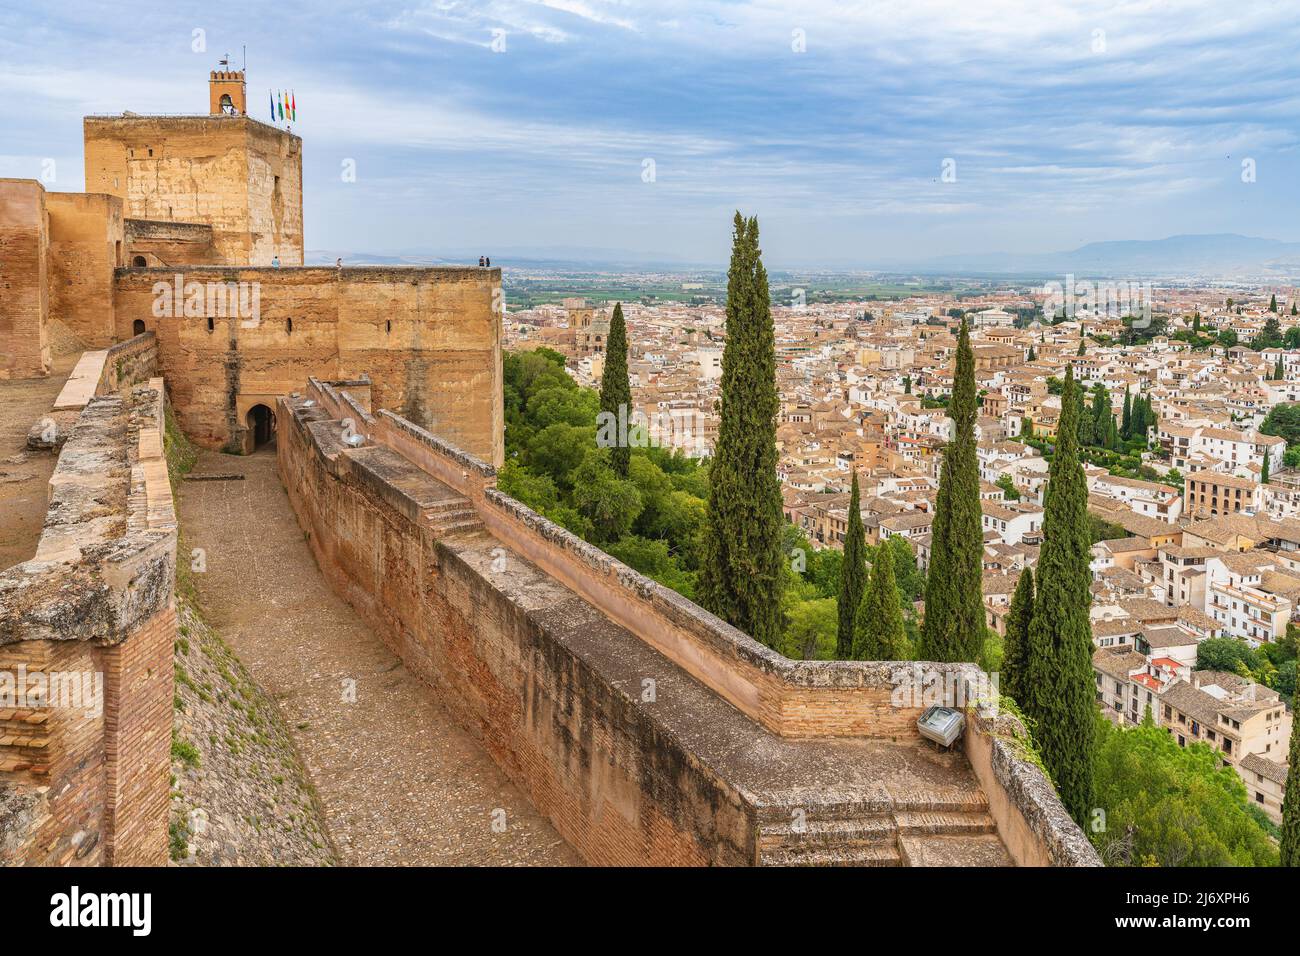 Vue sur l'Alhambra dans la ville andalouse de Grenade, en Espagne. Banque D'Images